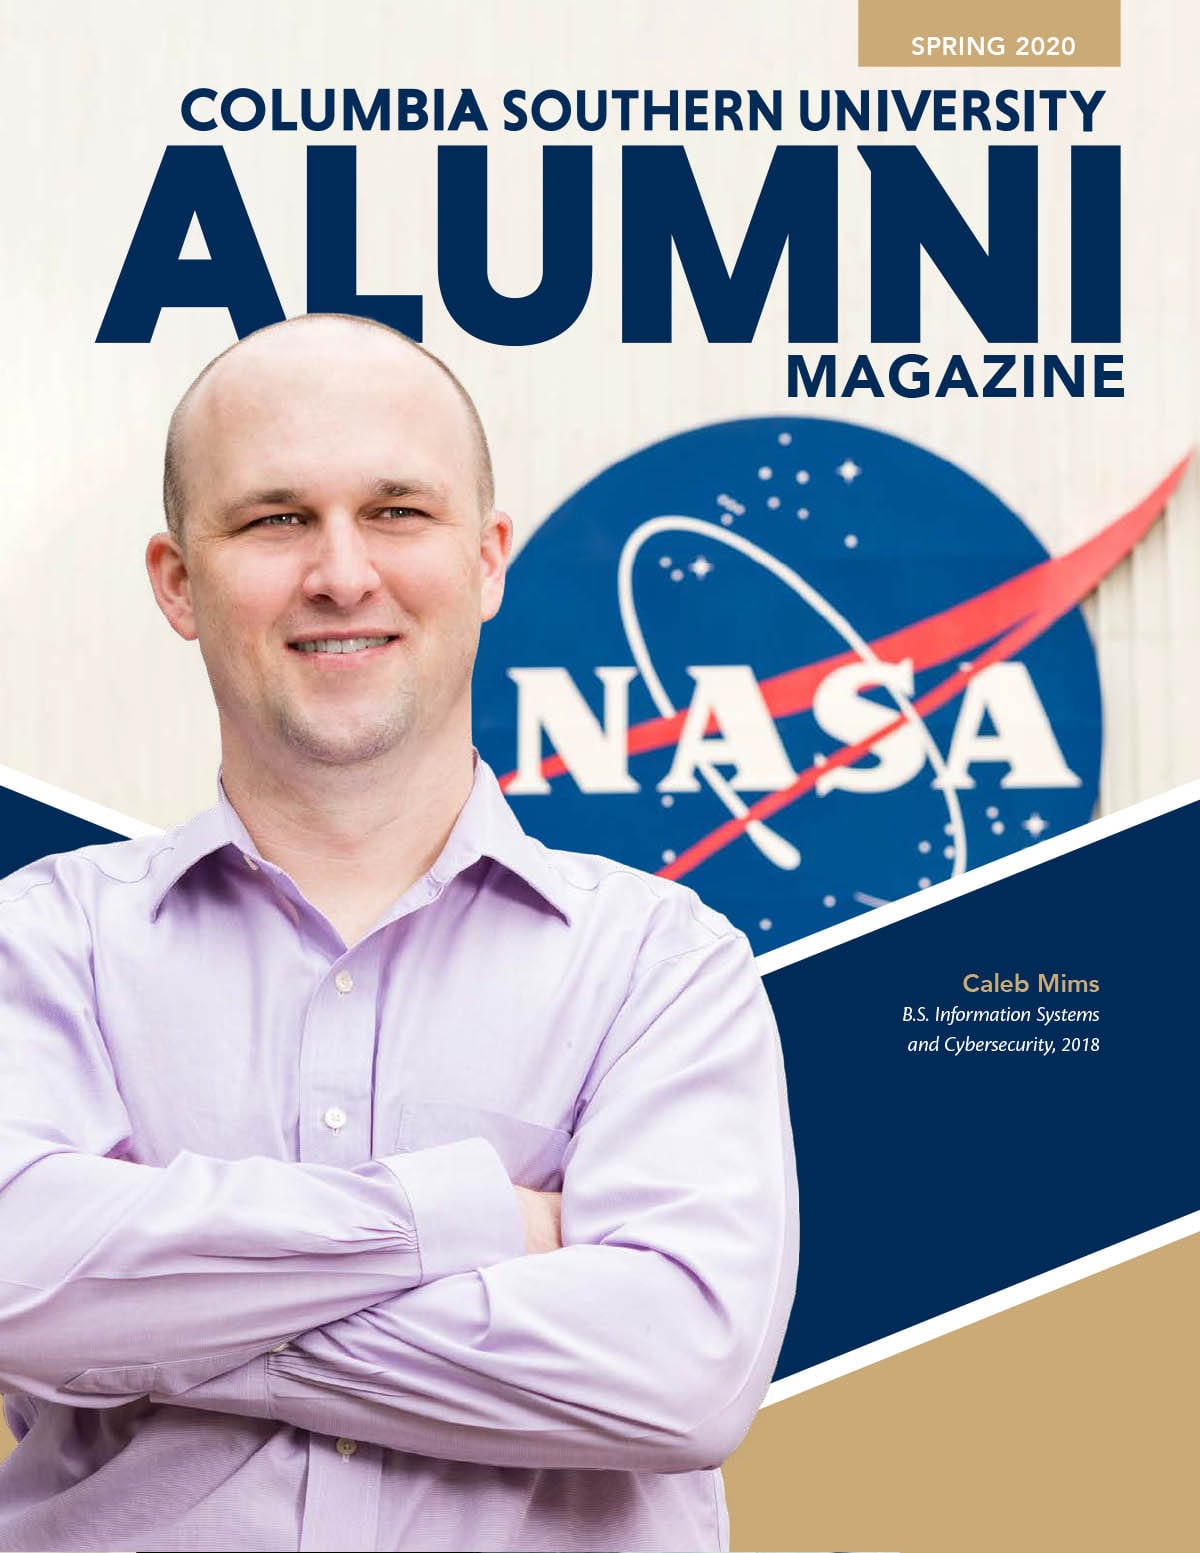 CSU Spring 2020 Alumni Magazine cover